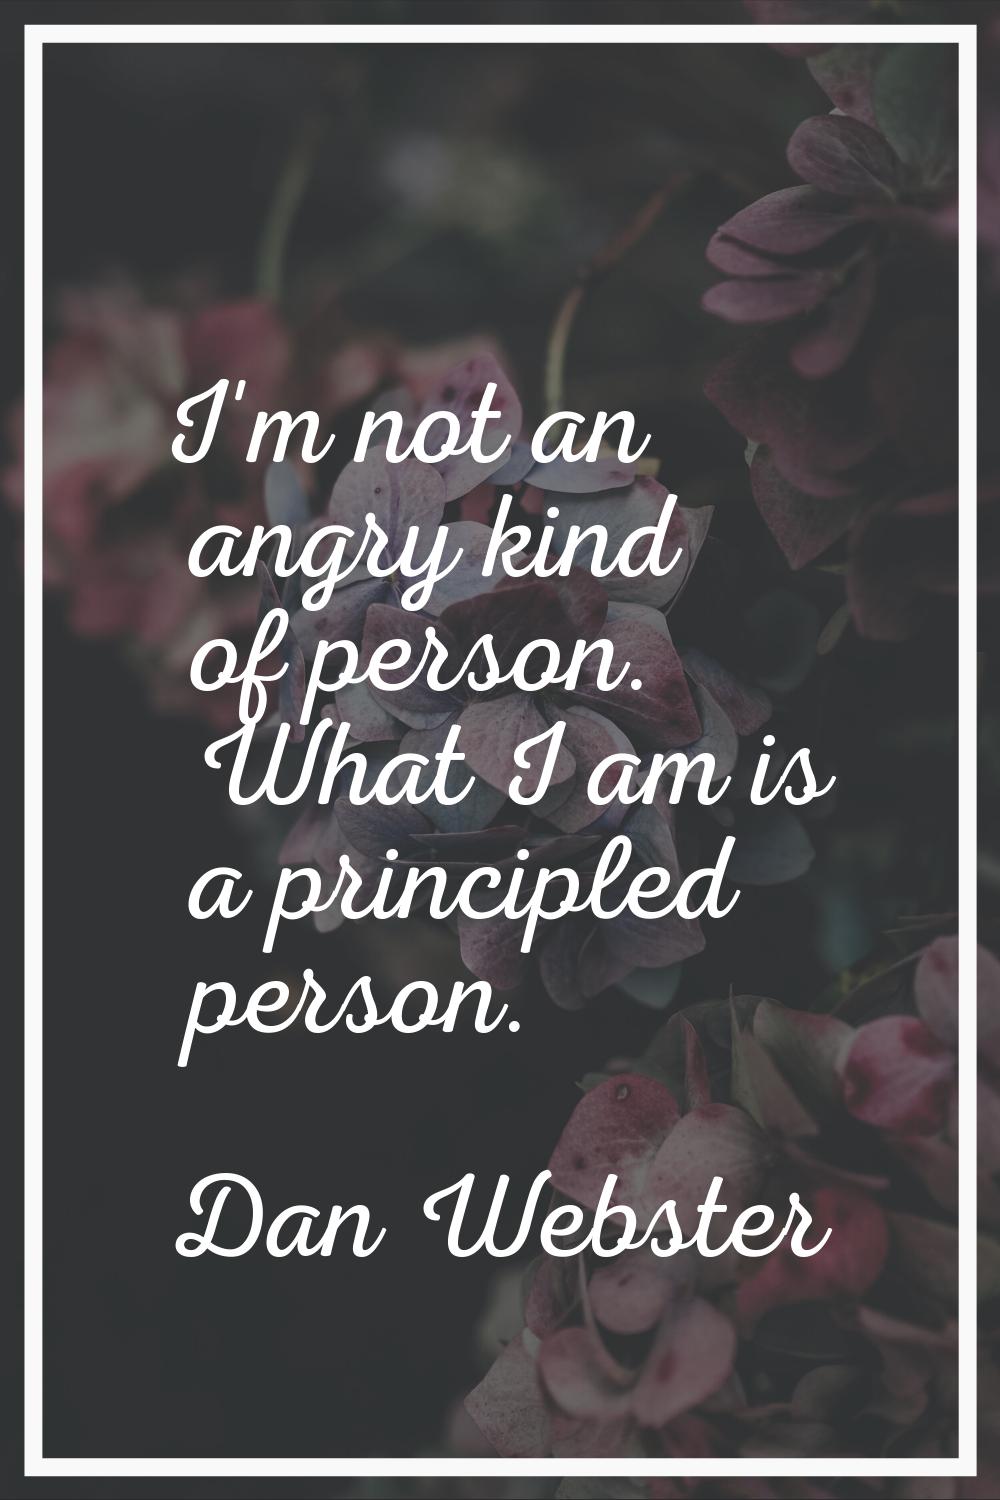 I'm not an angry kind of person. What I am is a principled person.